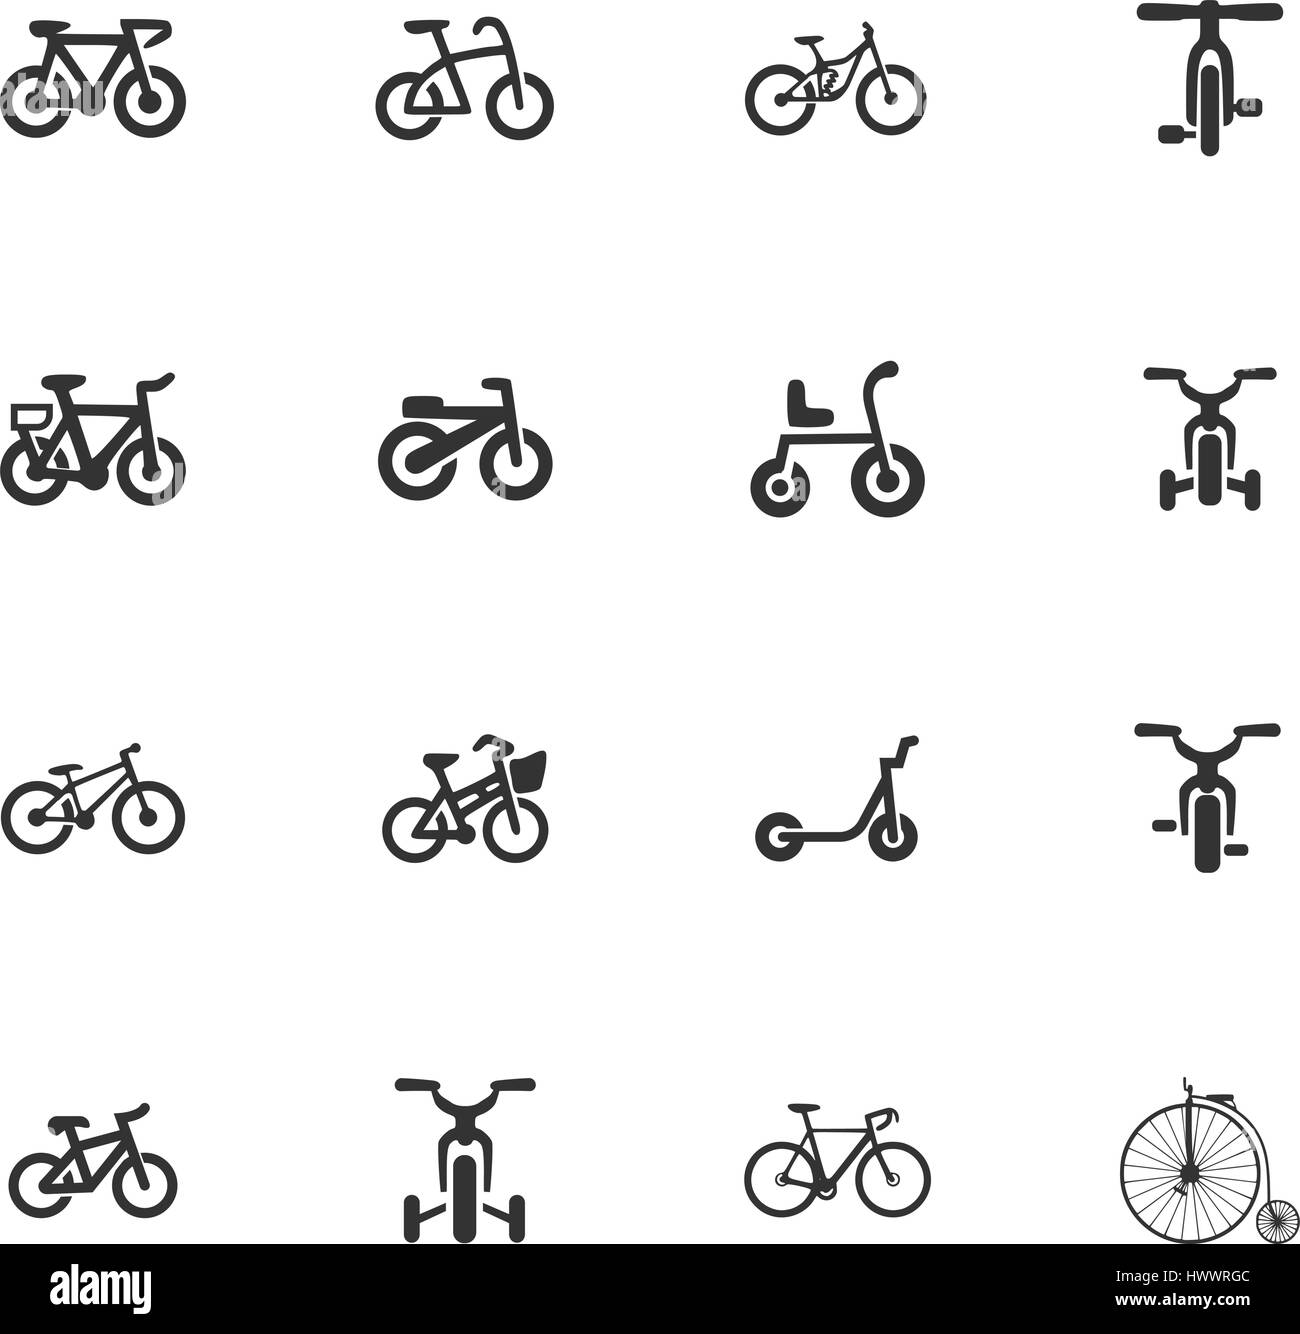 Tipo di bicicletta icone vettoriali per la progettazione di interfacce utente Illustrazione Vettoriale